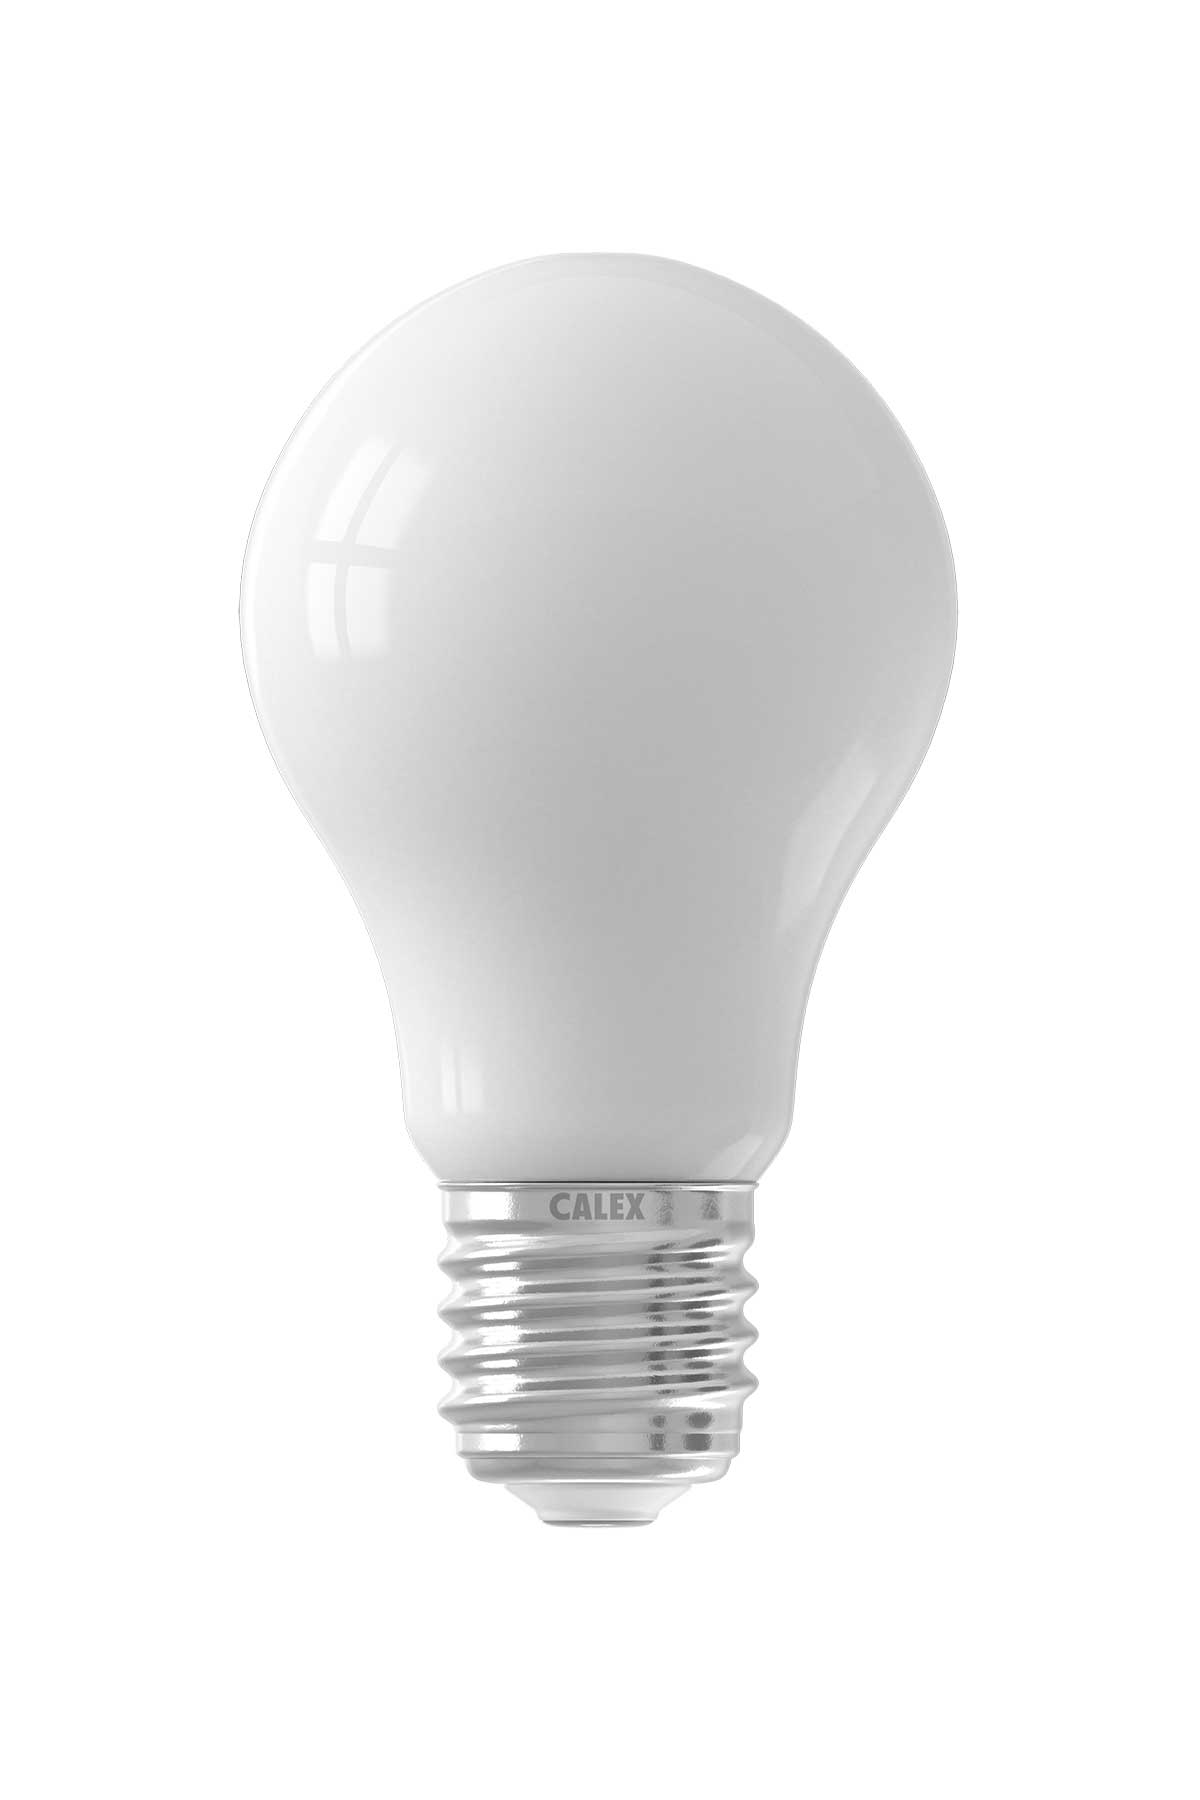 Lampadina LED intelligente, Lampadina LED Calex Smart Standard, E27, bianco, 7 W, 806 ml